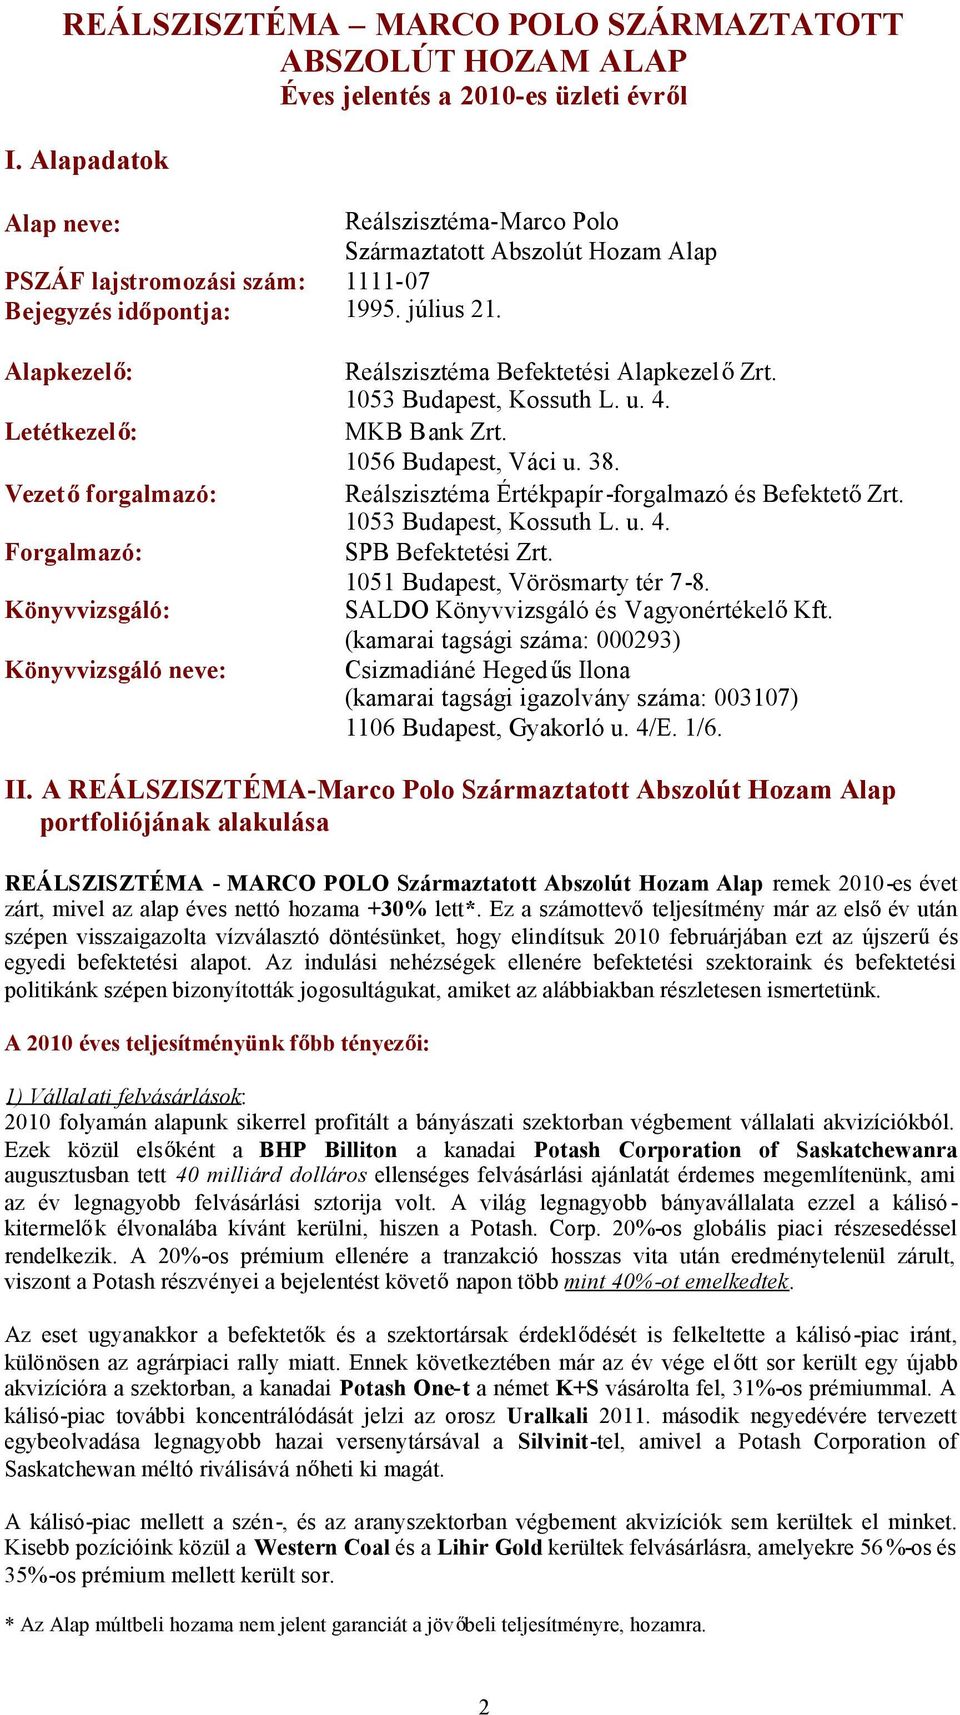 Alapkezel : Reálszisztéma Befektetési Alapkezel Zrt. 1053 Budapest, Kossuth L. u. 4. Letétkezel : MKB Bank Zrt. 1056 Budapest, Váci u. 38.